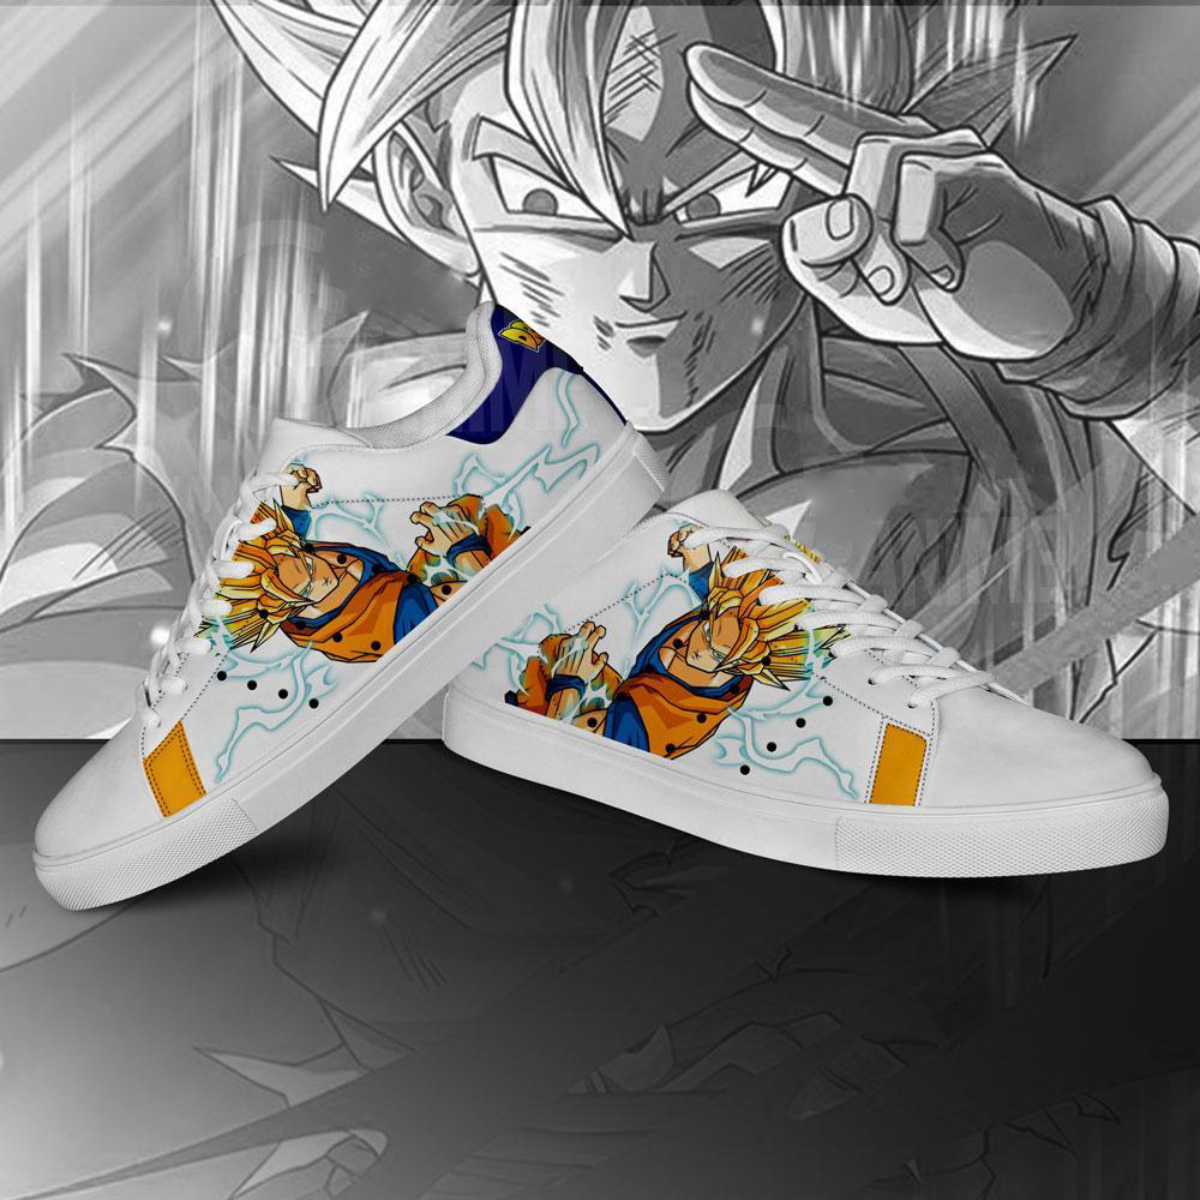 Pixilart - Goku Super Sayajin 4 by seven-shoes